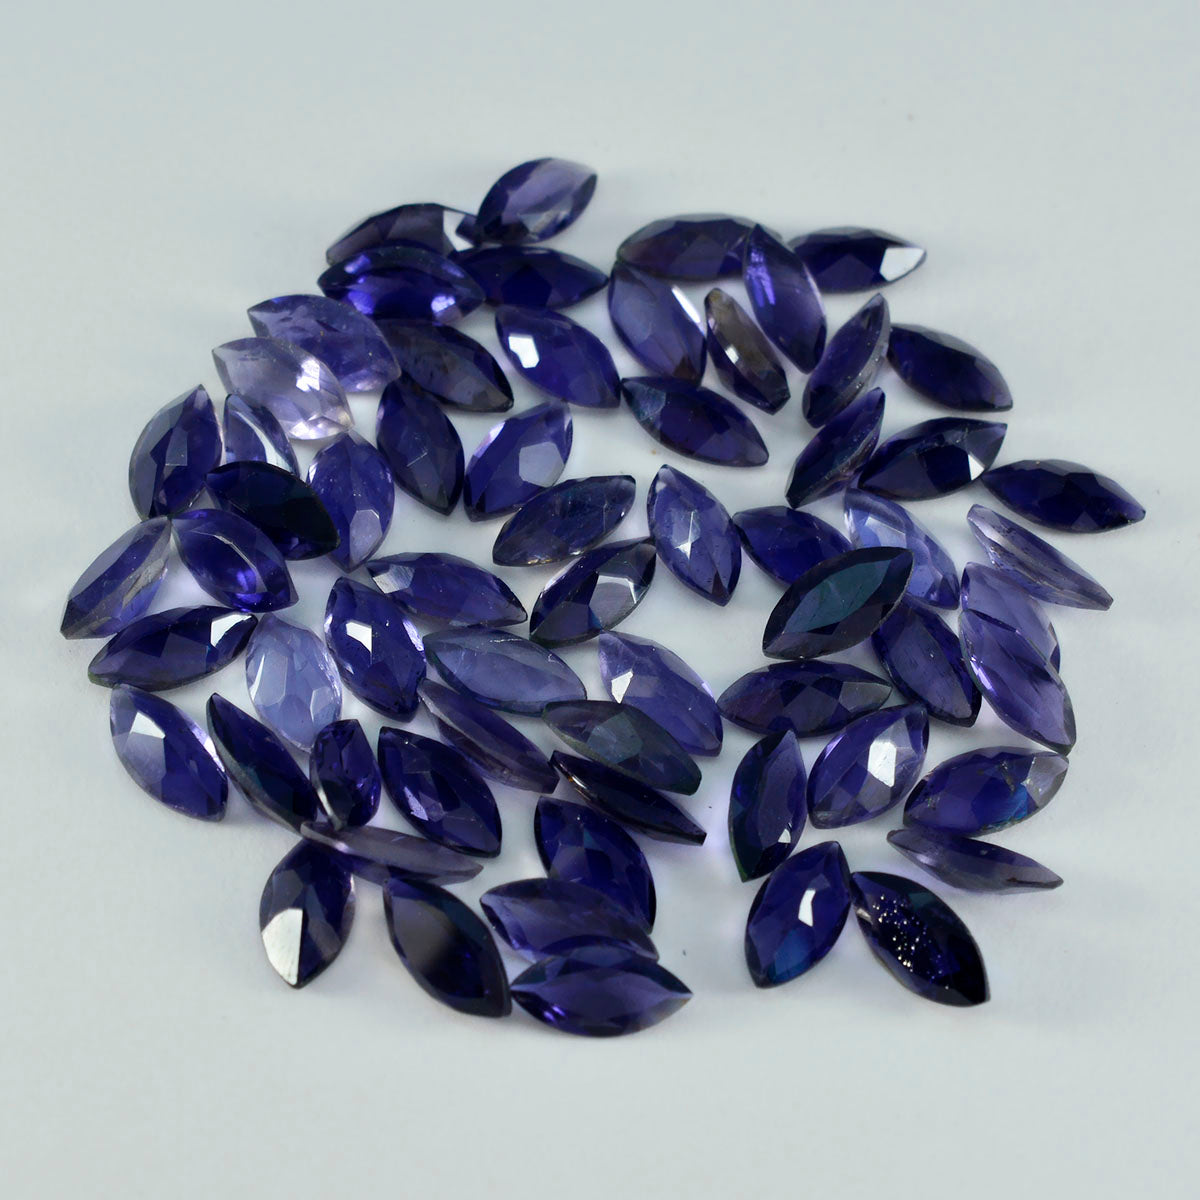 Riyogems 1 Stück blauer Iolith, facettiert, 5 x 10 mm, Marquise-Form, tolle Qualitäts-Edelsteine